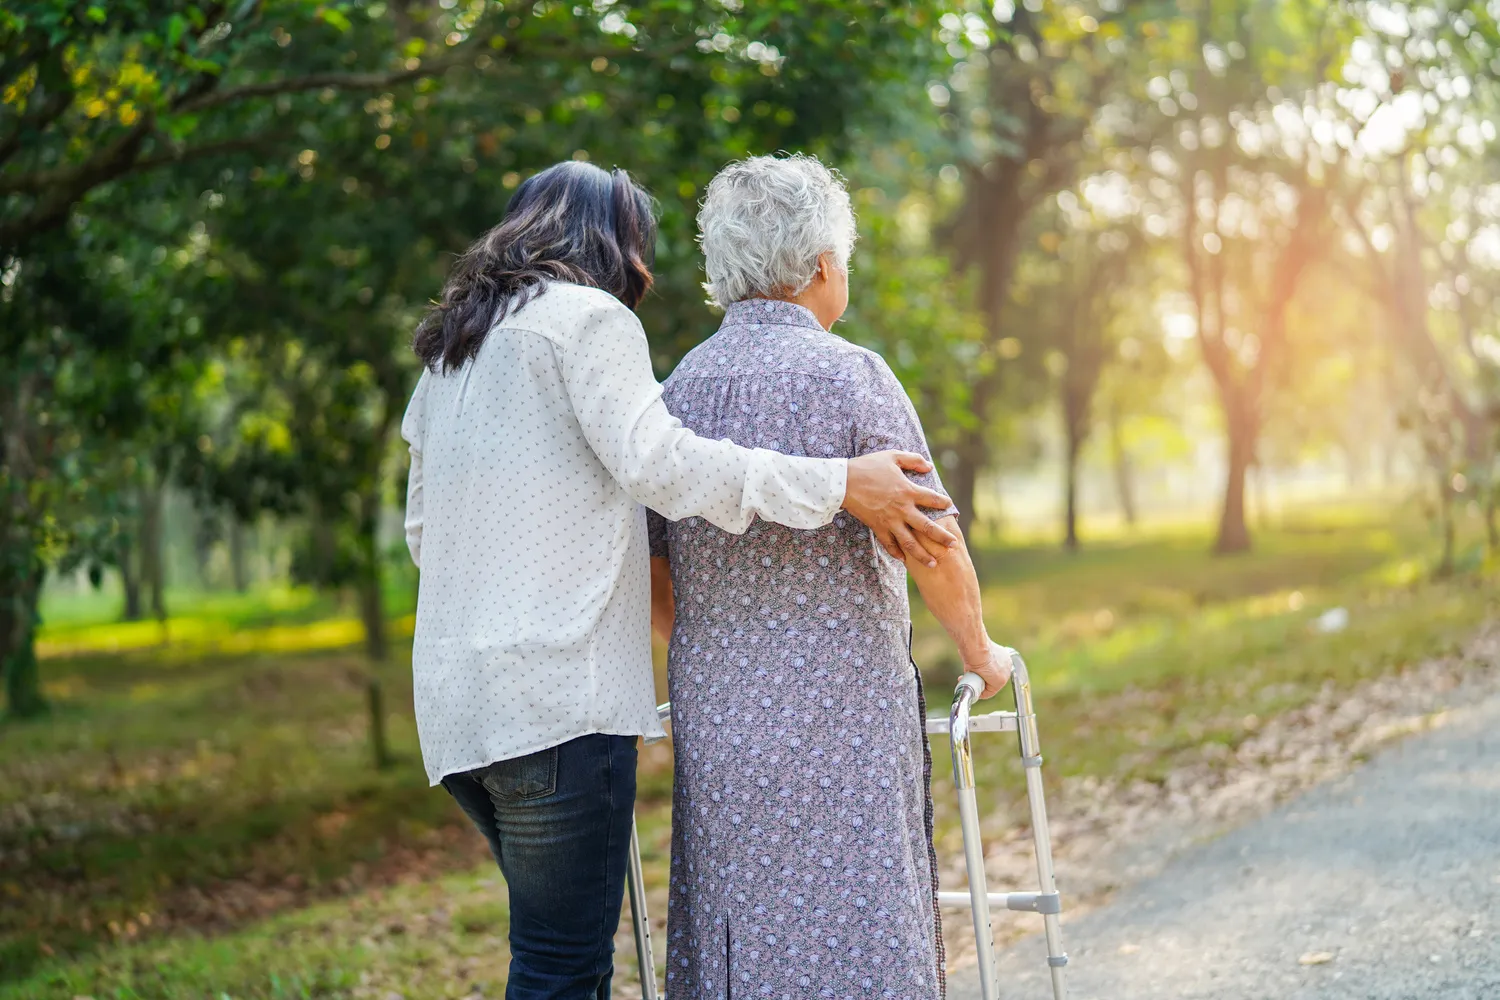 SENIOR GOLD 24 GMBH, Krankenschwester hilft einer alten Dame beim Gehen mit Hilfe einer Gehhilfe